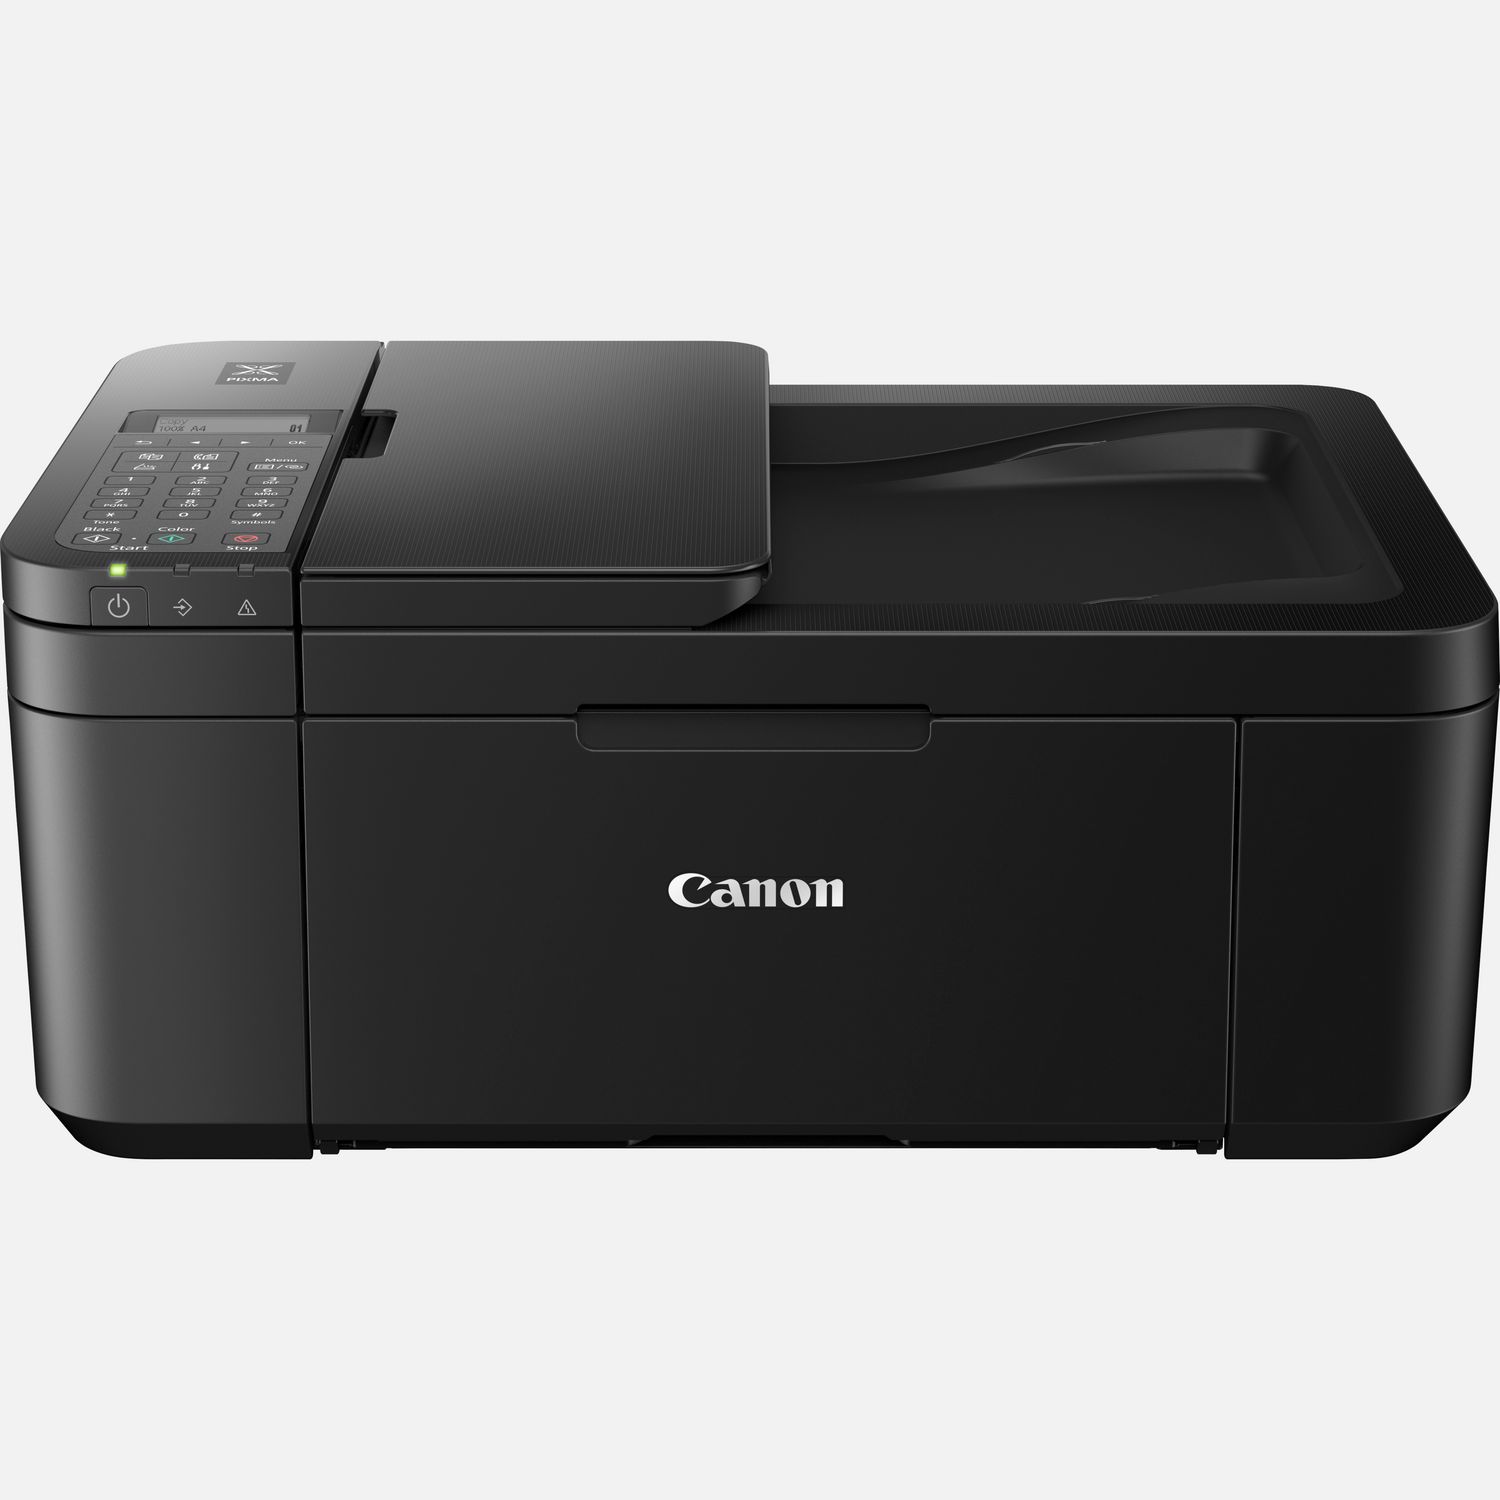 Opnieuw schieten Voorzien vrijheid Canon PIXMA TR4550 4-in-One, Zwart in Wi-Fi printers — Canon Nederland Store